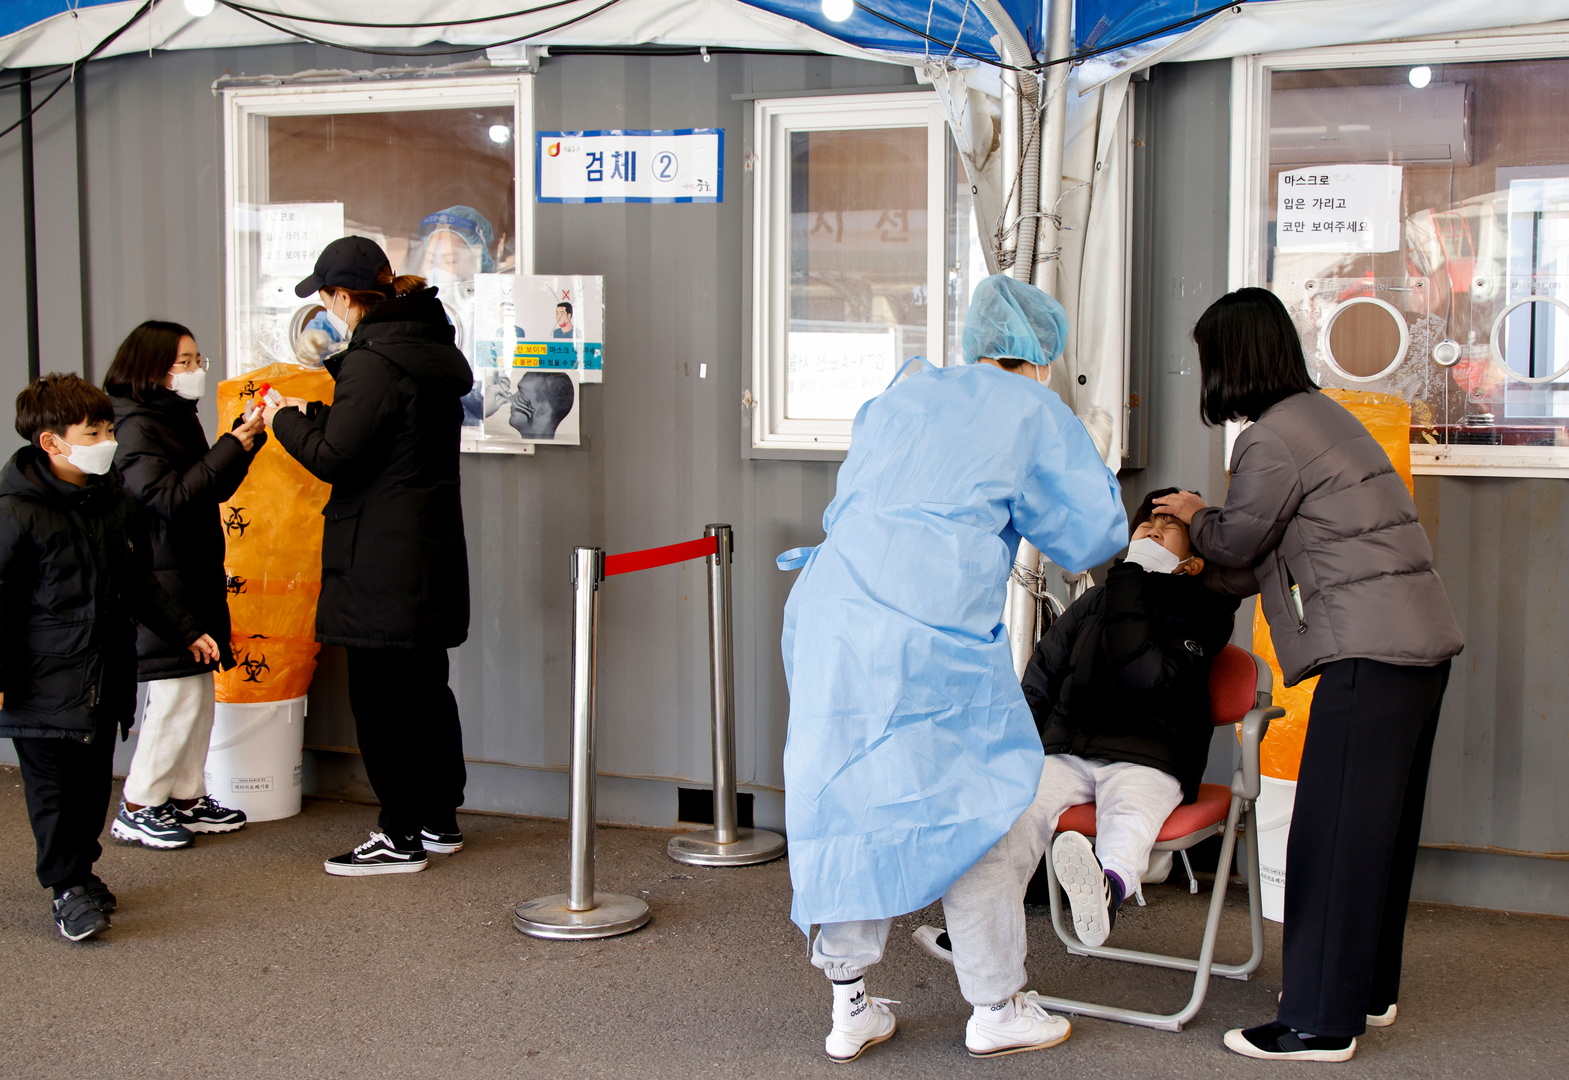 كوريا الجنوبية تسجل أكثر من 7 آلاف إصابة بكورونا في يوم واحد وتبدأ الجرعات المعززة للبالغين